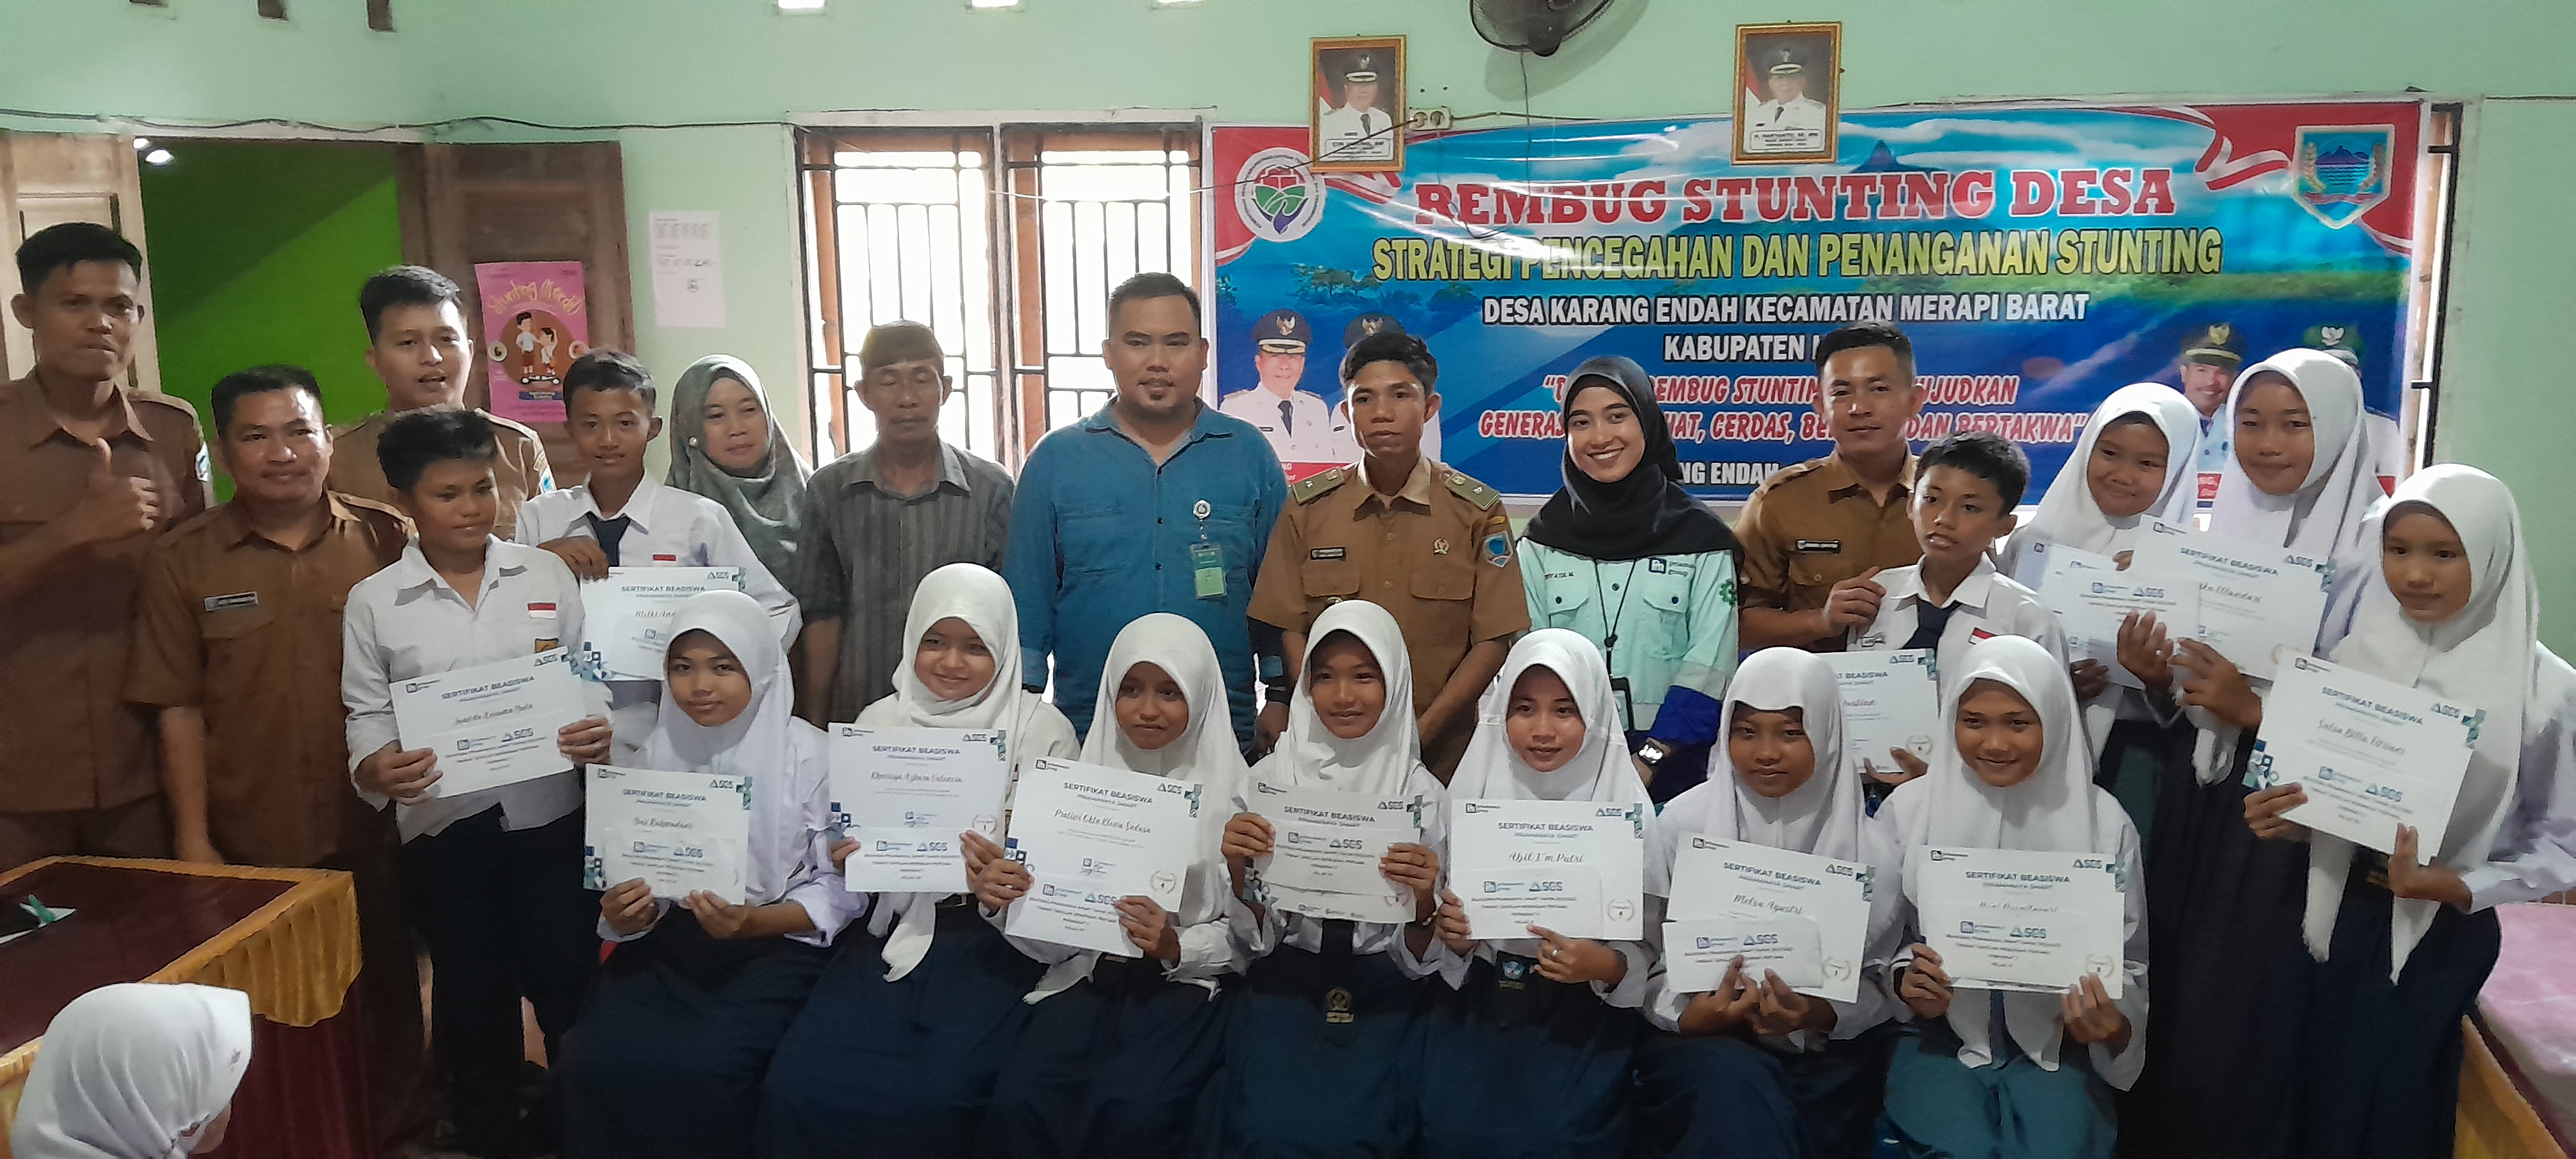 Perdana, Priamanaya Group Salurkan Bantuan Beasiswa Di Desa Karang Endah